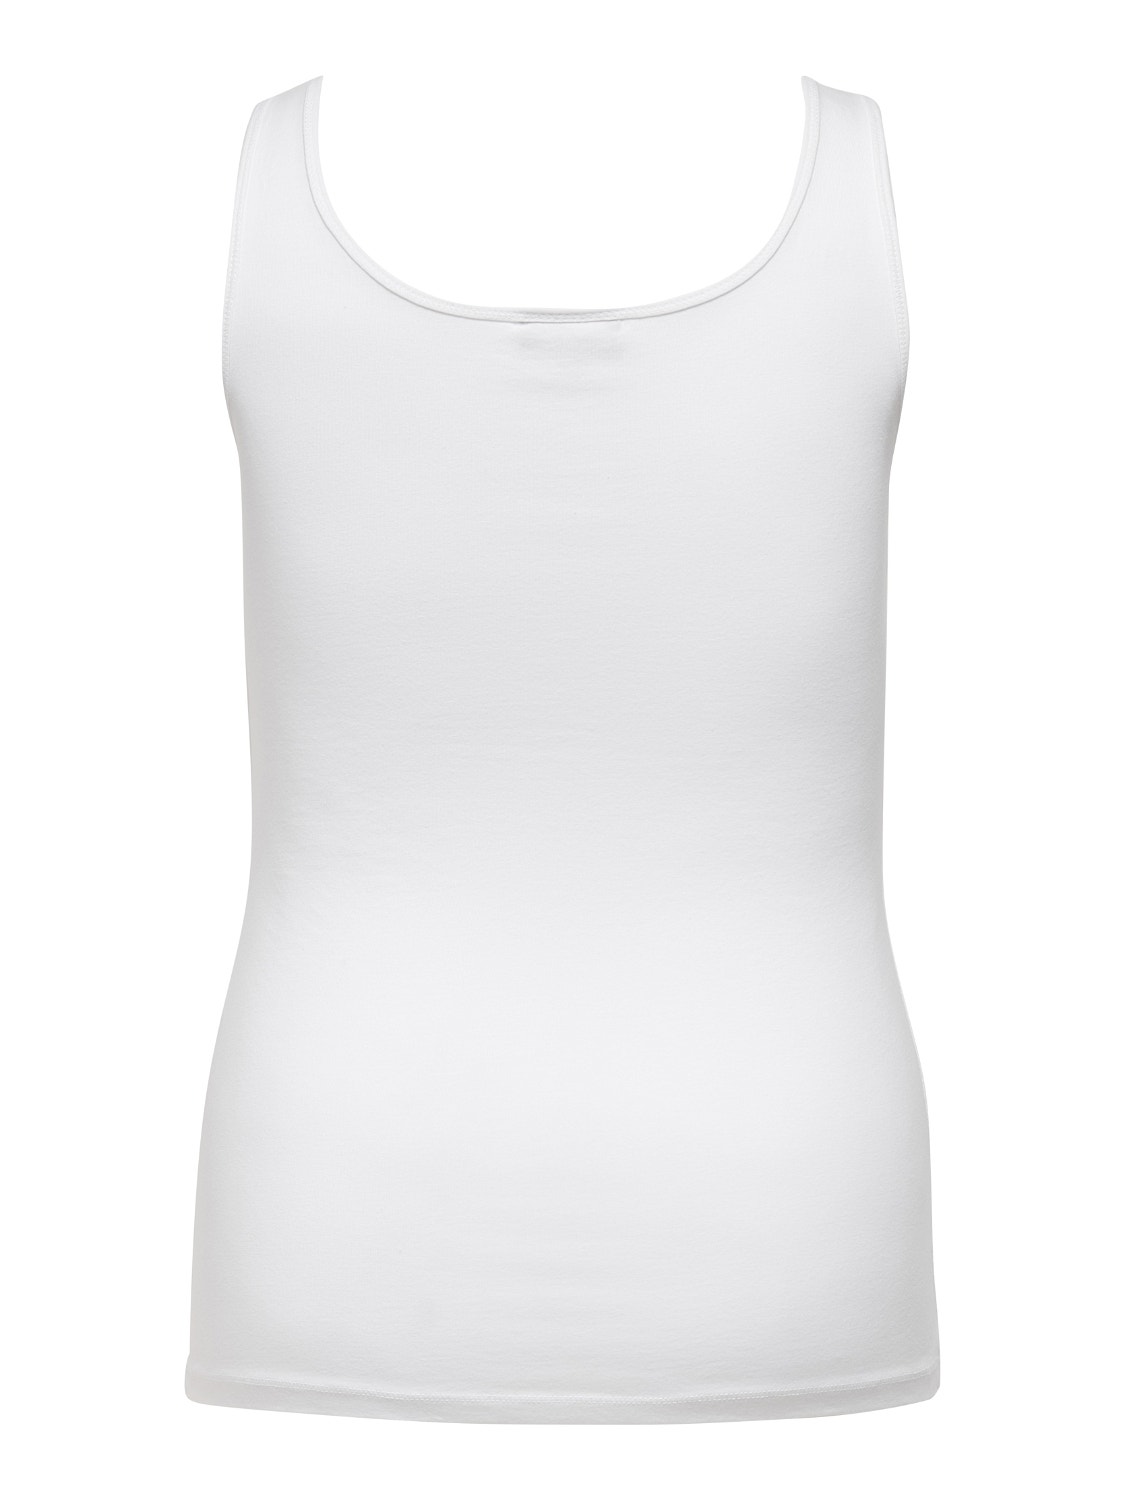 ONLY Básico en tallas grandes Camiseta de tirantes -White - 15188036